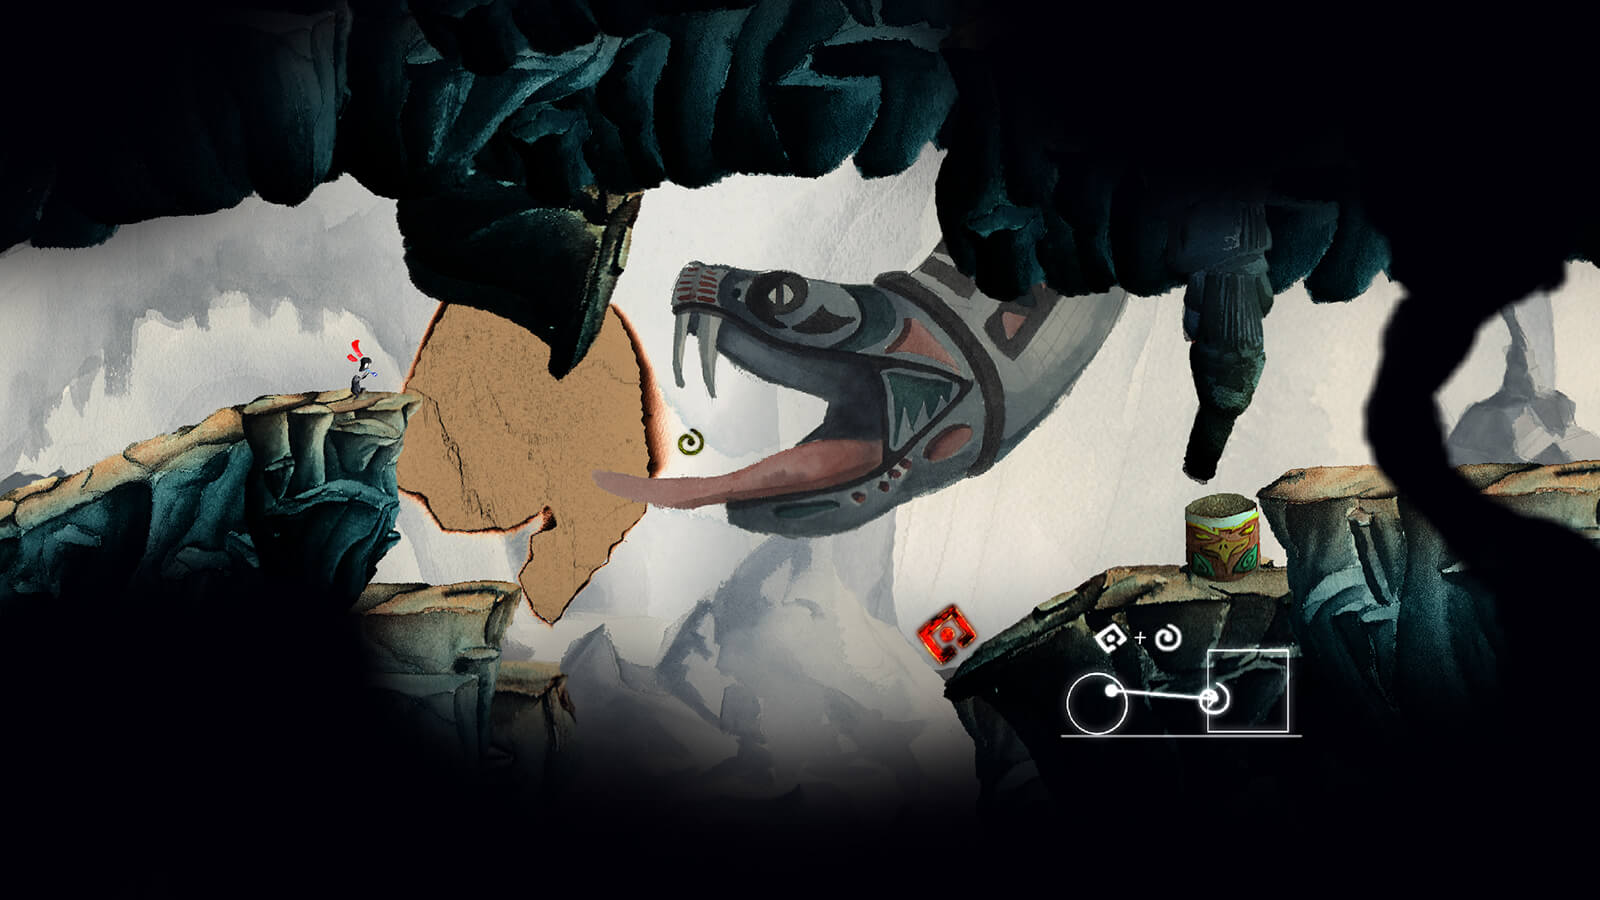 Escena de cueva en 2D con una gran serpiente gris colgando del techo, con las fauces abiertas y los colmillos descubiertos contra una pequeña figura negra.